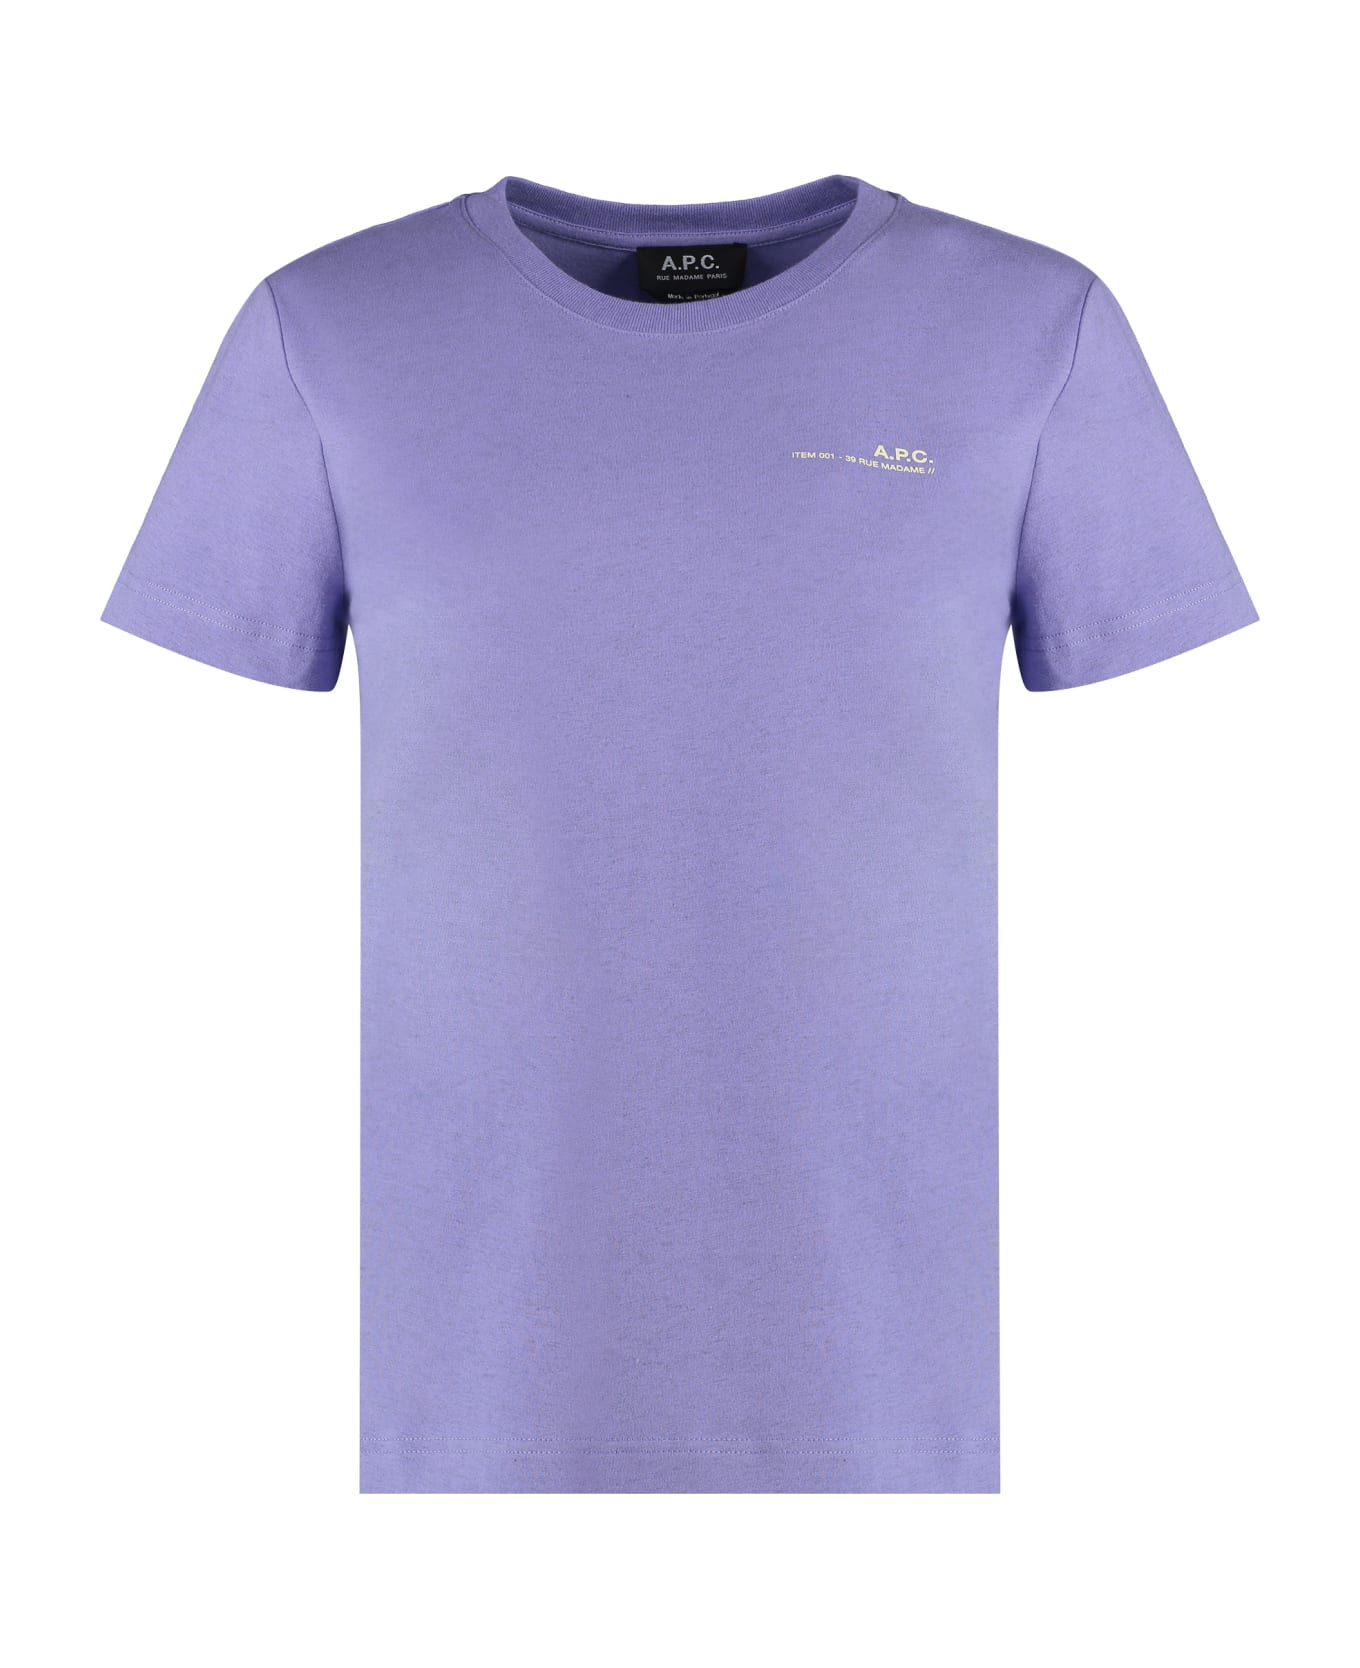 A.P.C. Item Cotton T-shirt - Lilac